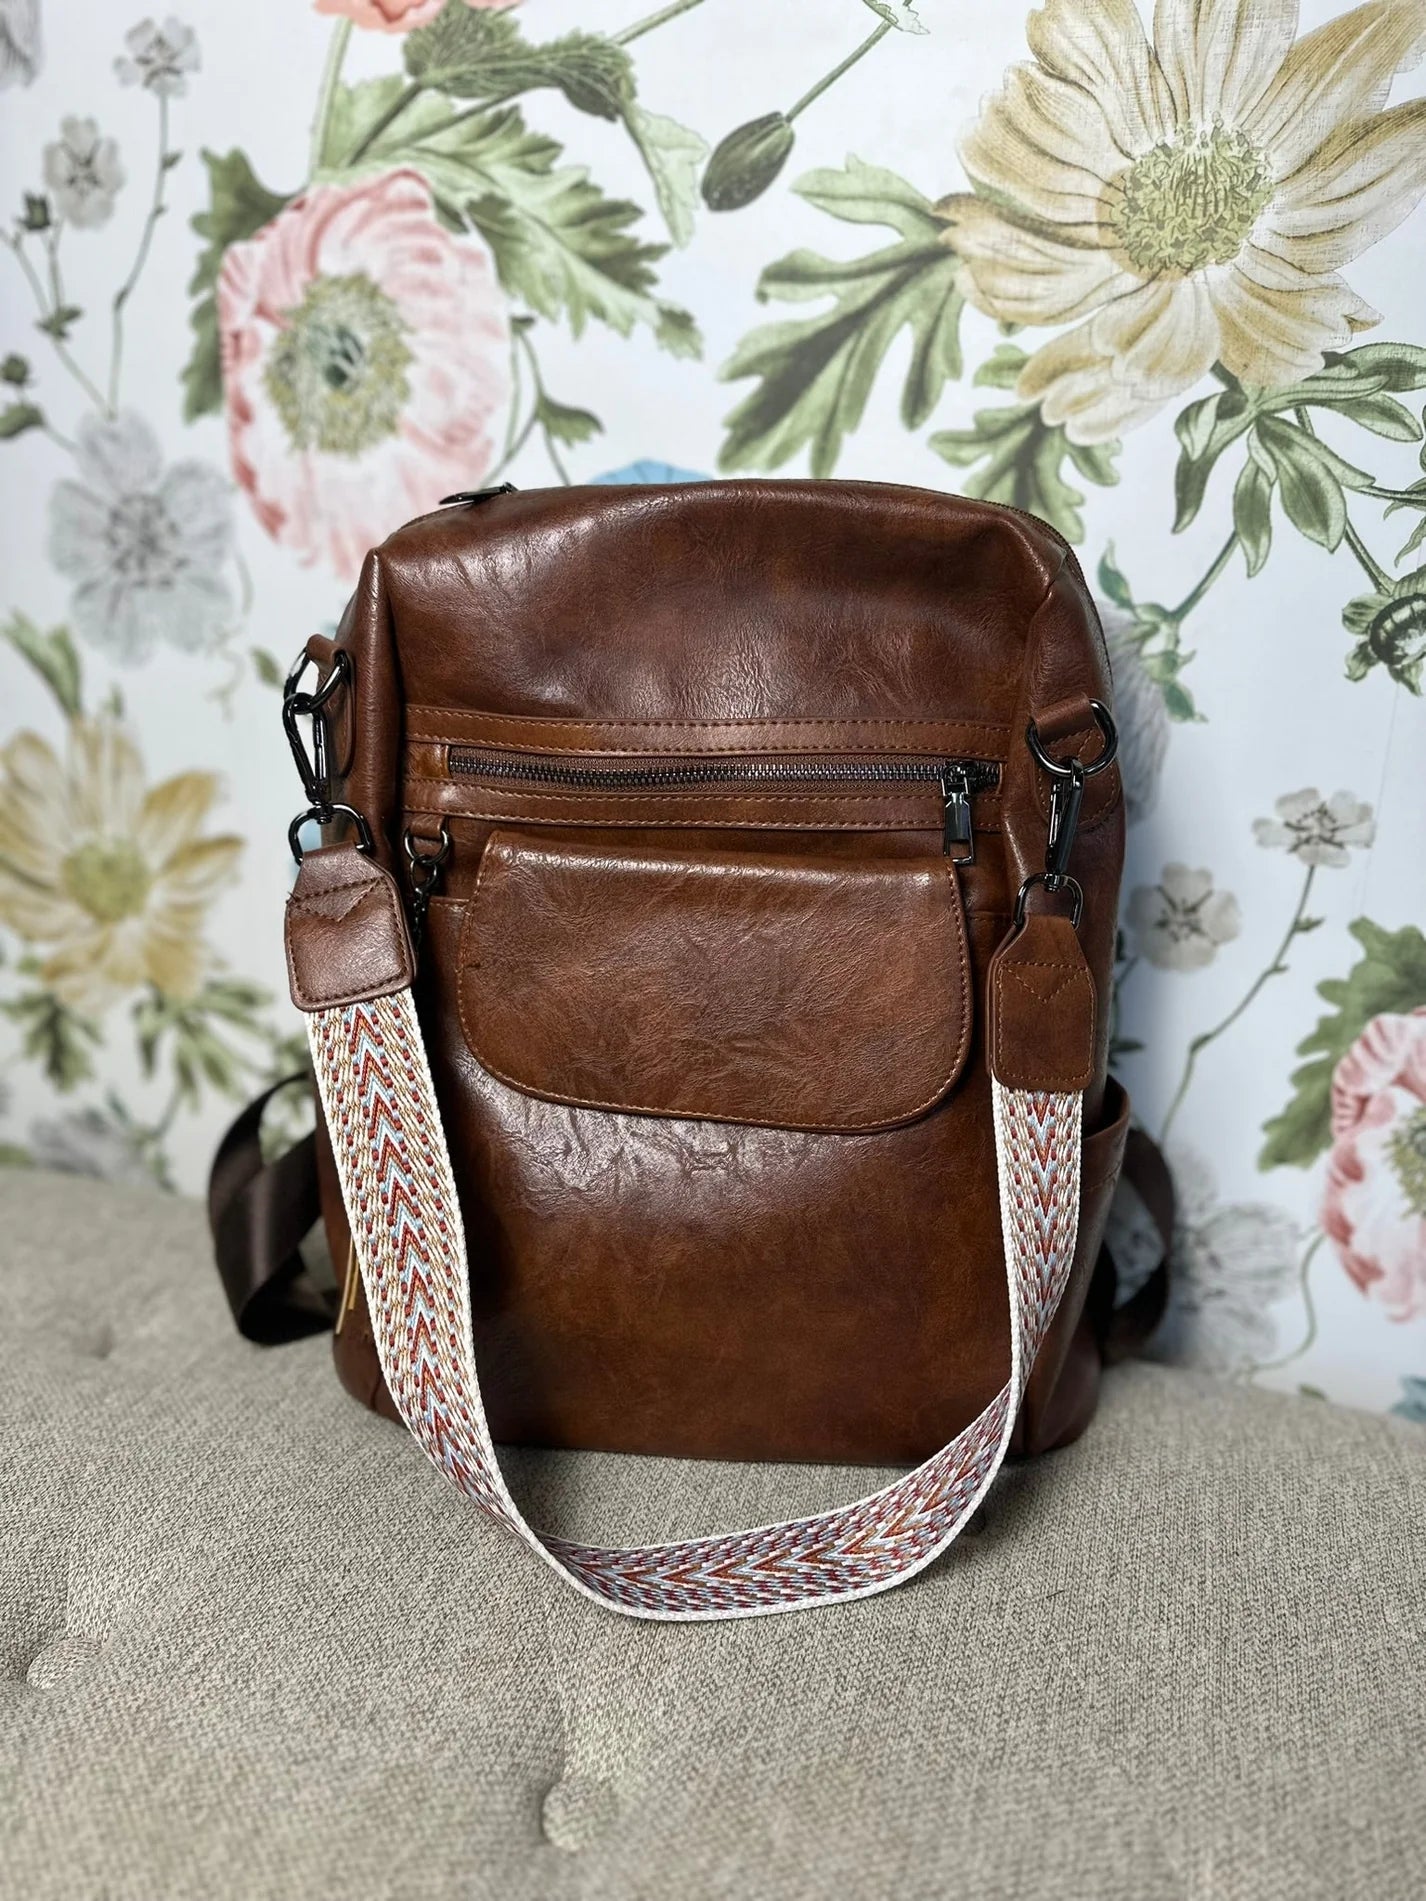 Dark Brown Backpack